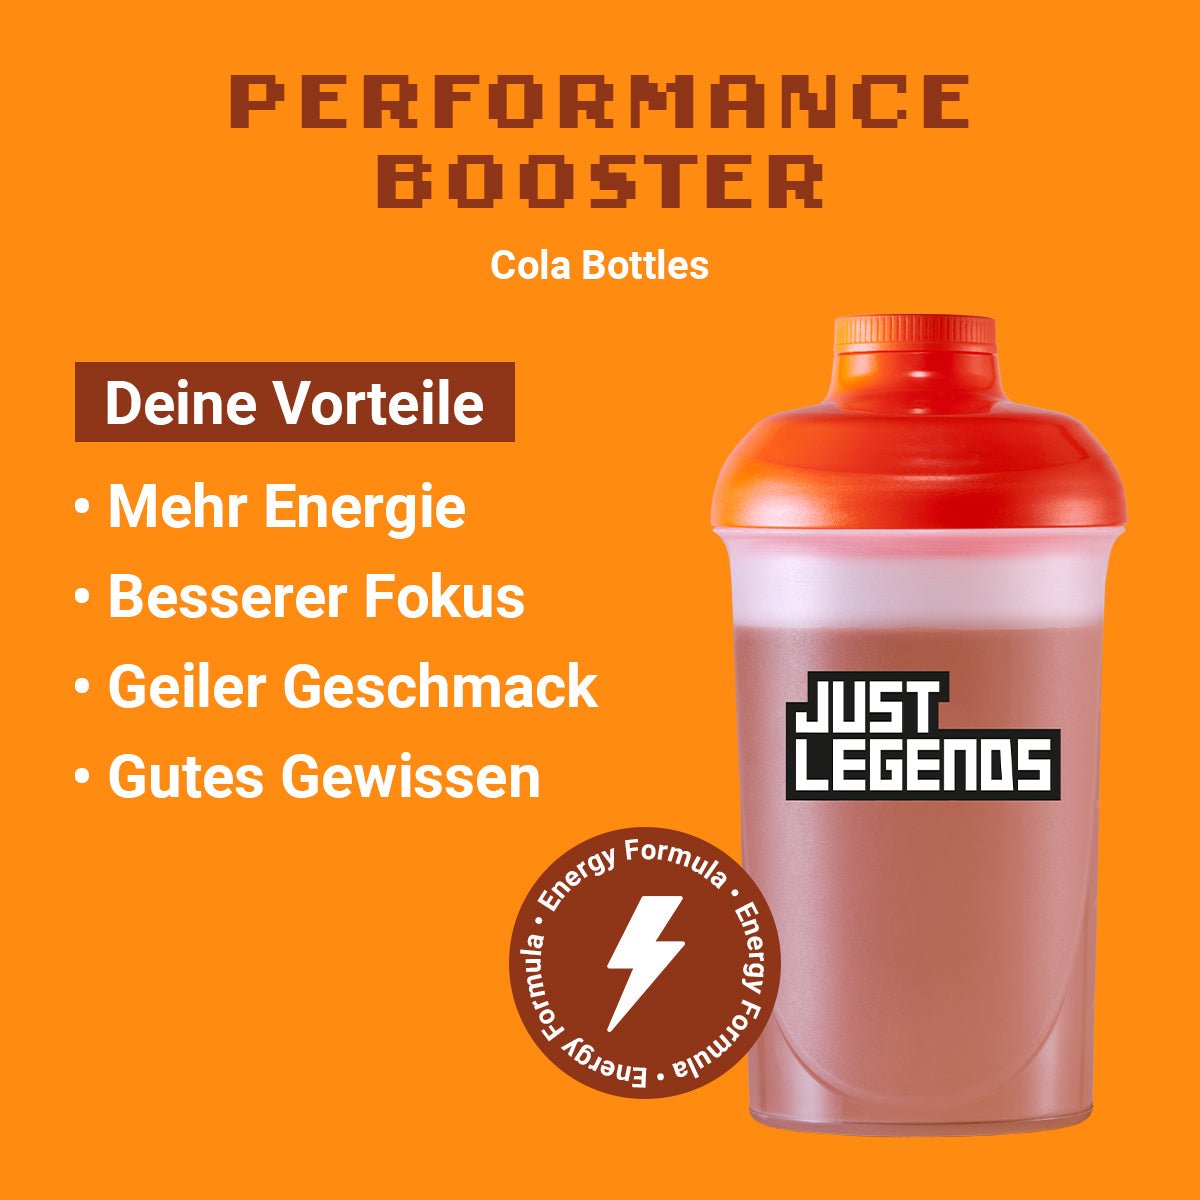 Just Legends Performance Booster Cola Bottles | Funktionaler, veganer Performance Booster auf Pulverbasis ohne Zucker, mit wenig Kalorien, vielen Vitaminen und natürlichen Aromen.